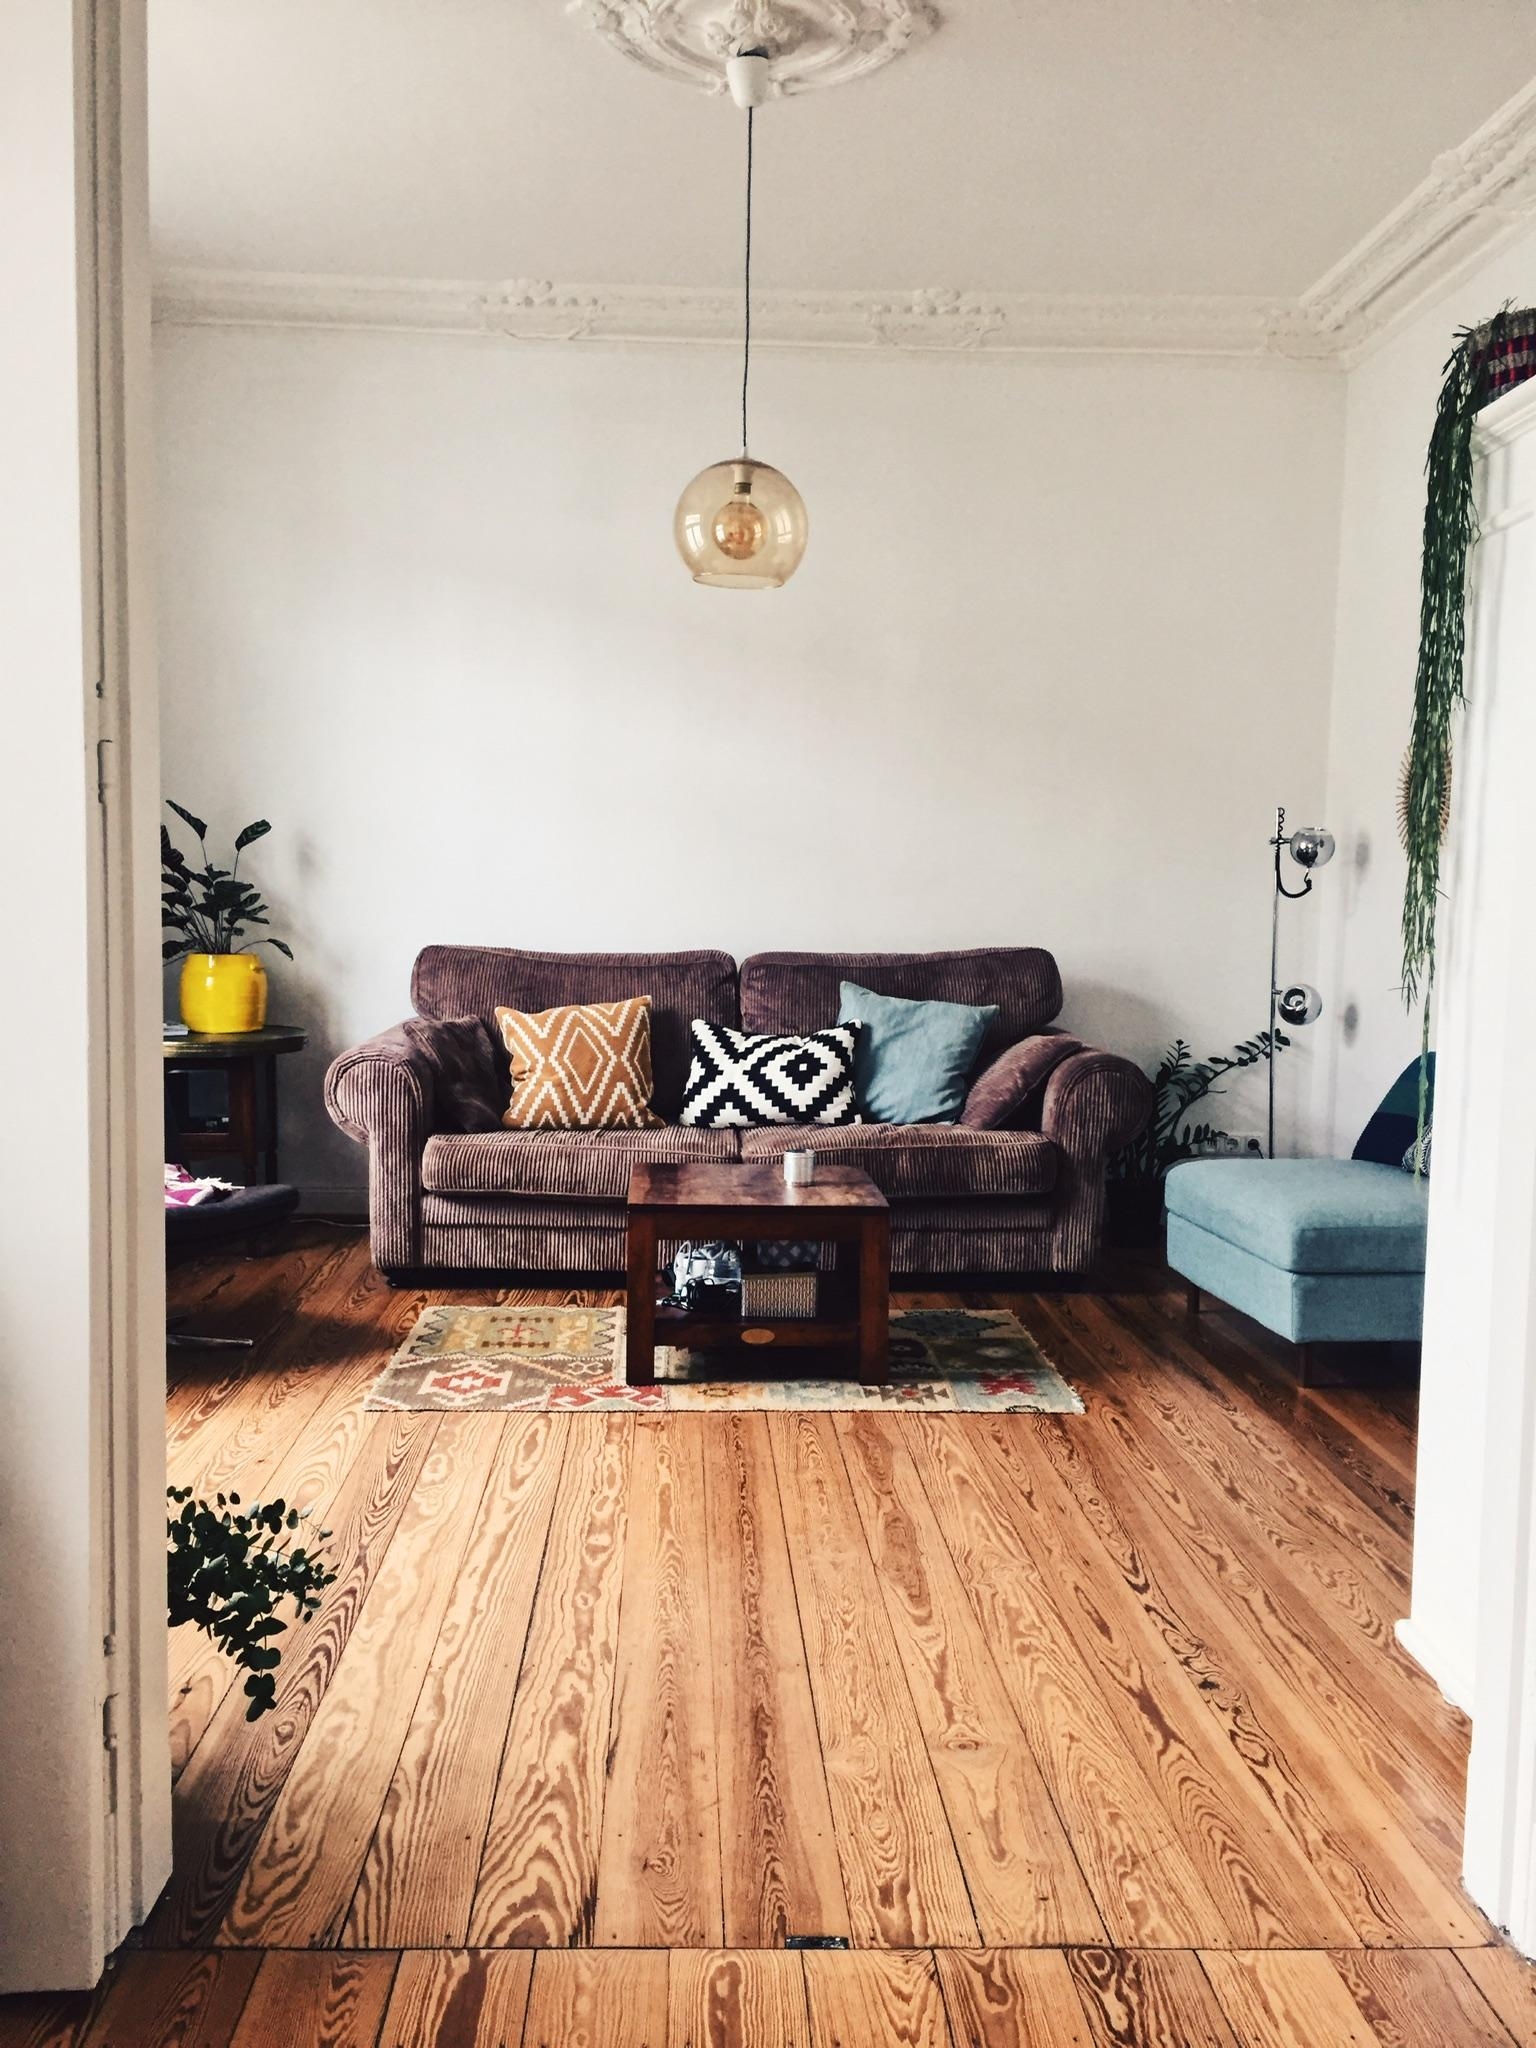 Unser Wohnzimmer. Ich liebe die super weiche Couch aus Cord
#Wohnzimmer #sofa
#livingroom